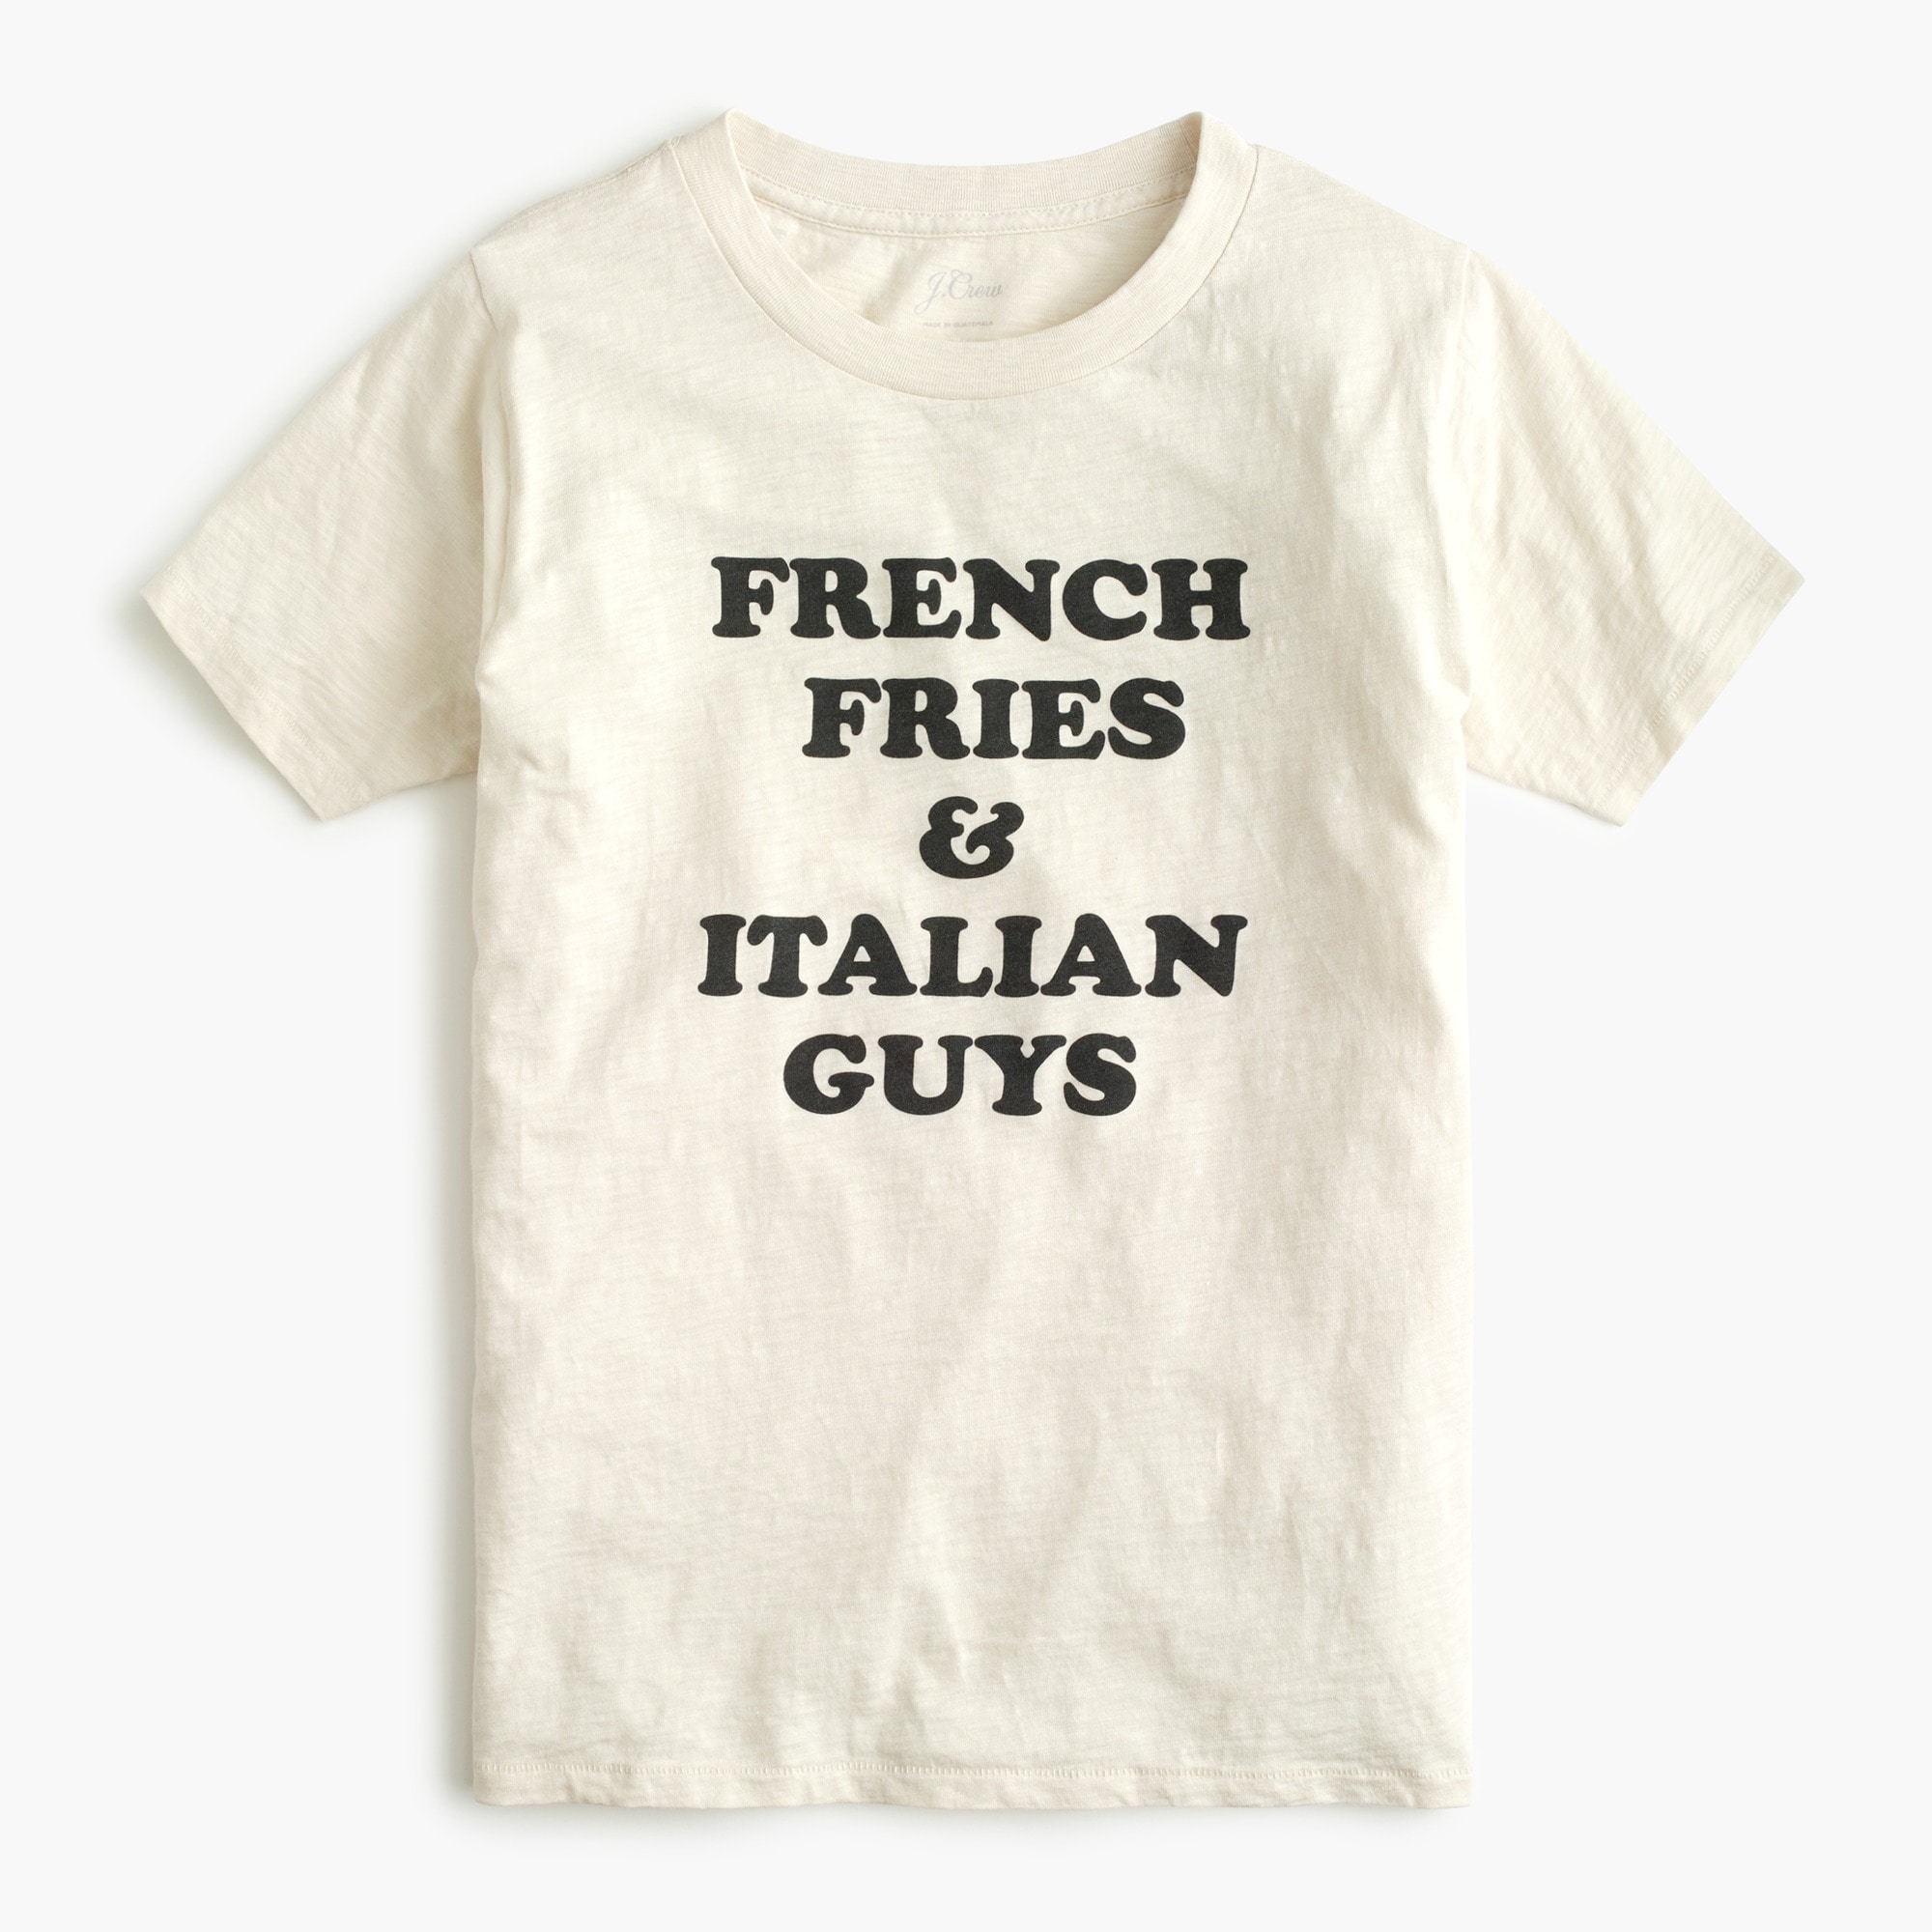 NWT J Crew Women's French Fries & Italian Guys Tee Shirt Mult Sizes Navy 